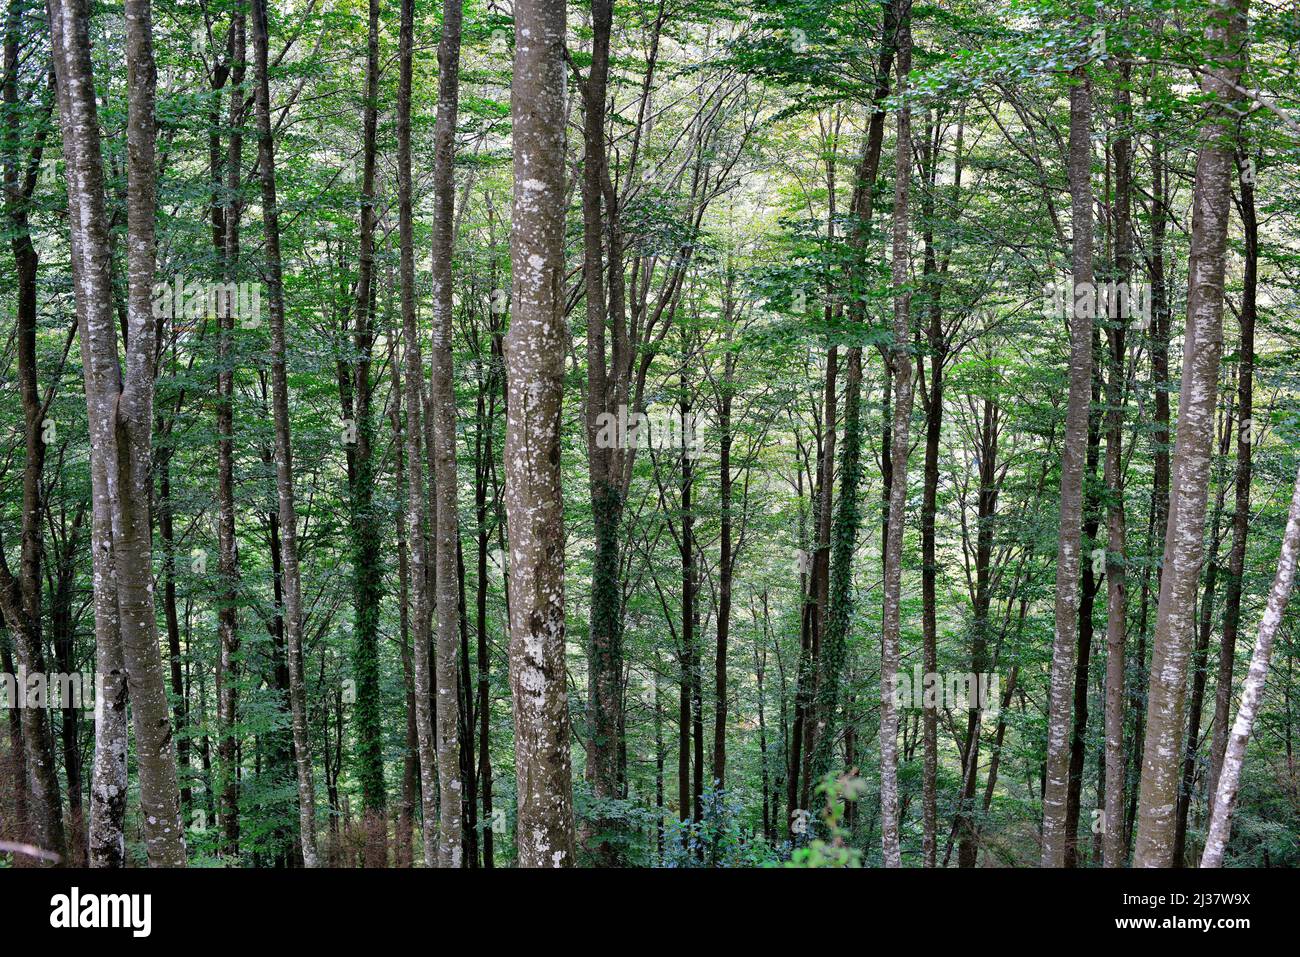 La haya europea (Fagus sylvatica) es un árbol caducifolio nativo de Europa central y las montañas del sur de Europa. Esta foto fue tomada en La Fageda de la Foto de stock